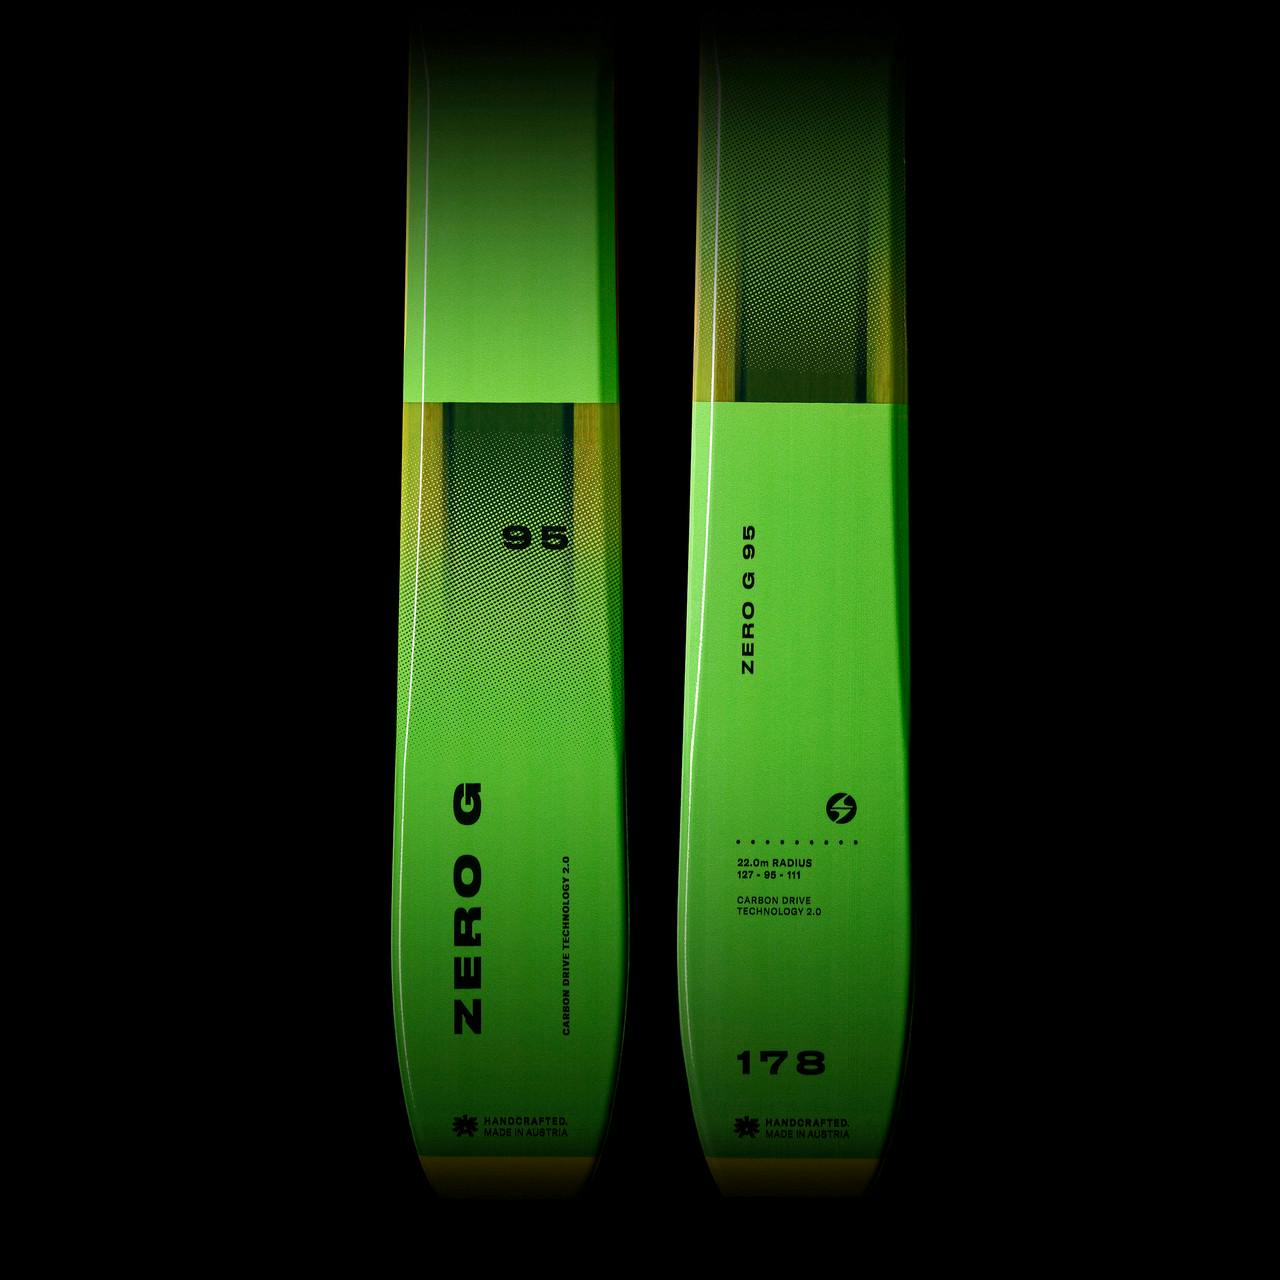 Zero G 095 Flat Skis Green